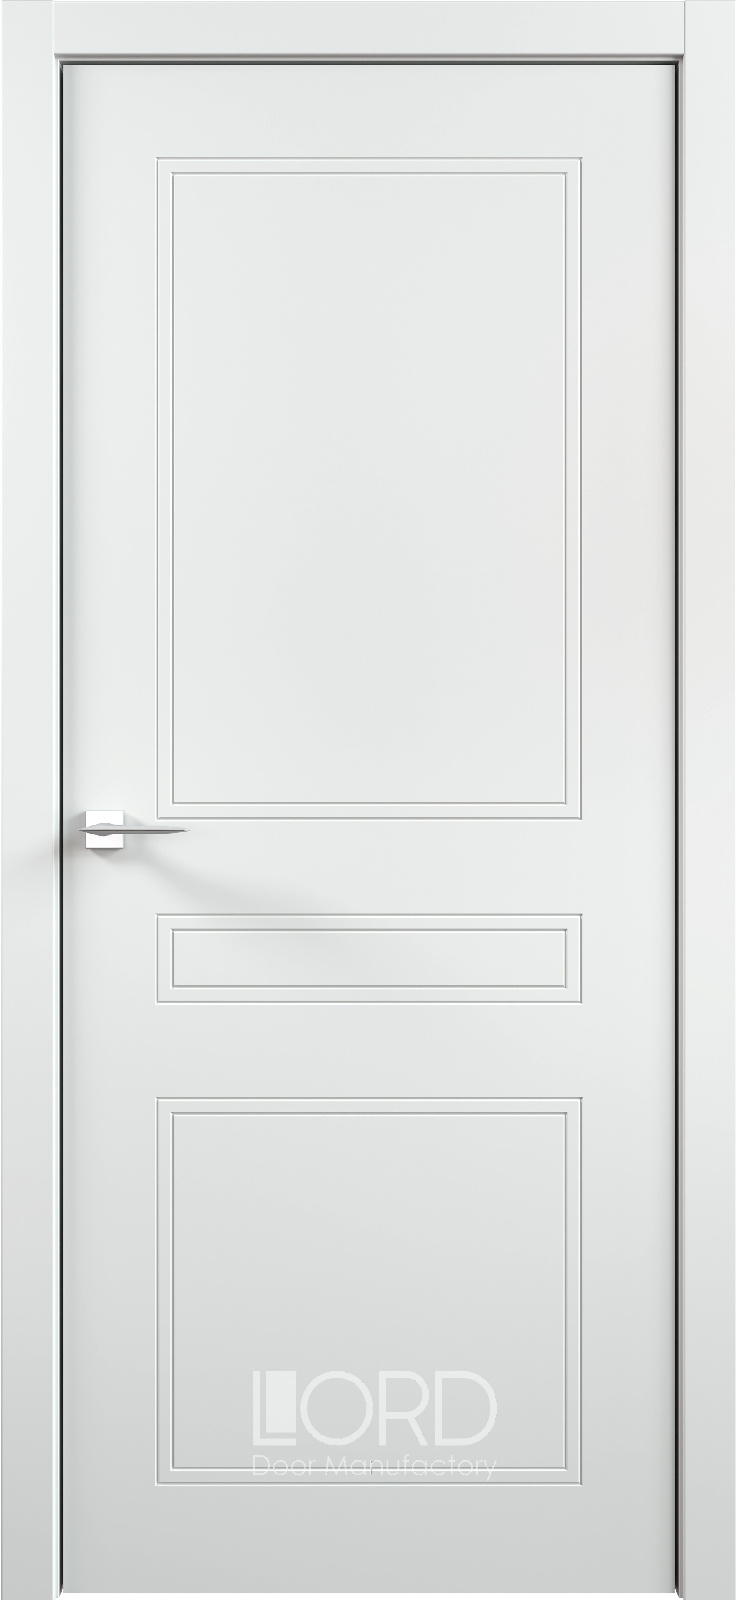 Лорд Межкомнатная дверь Италия 33 ДГ, арт. 22701 - фото №1